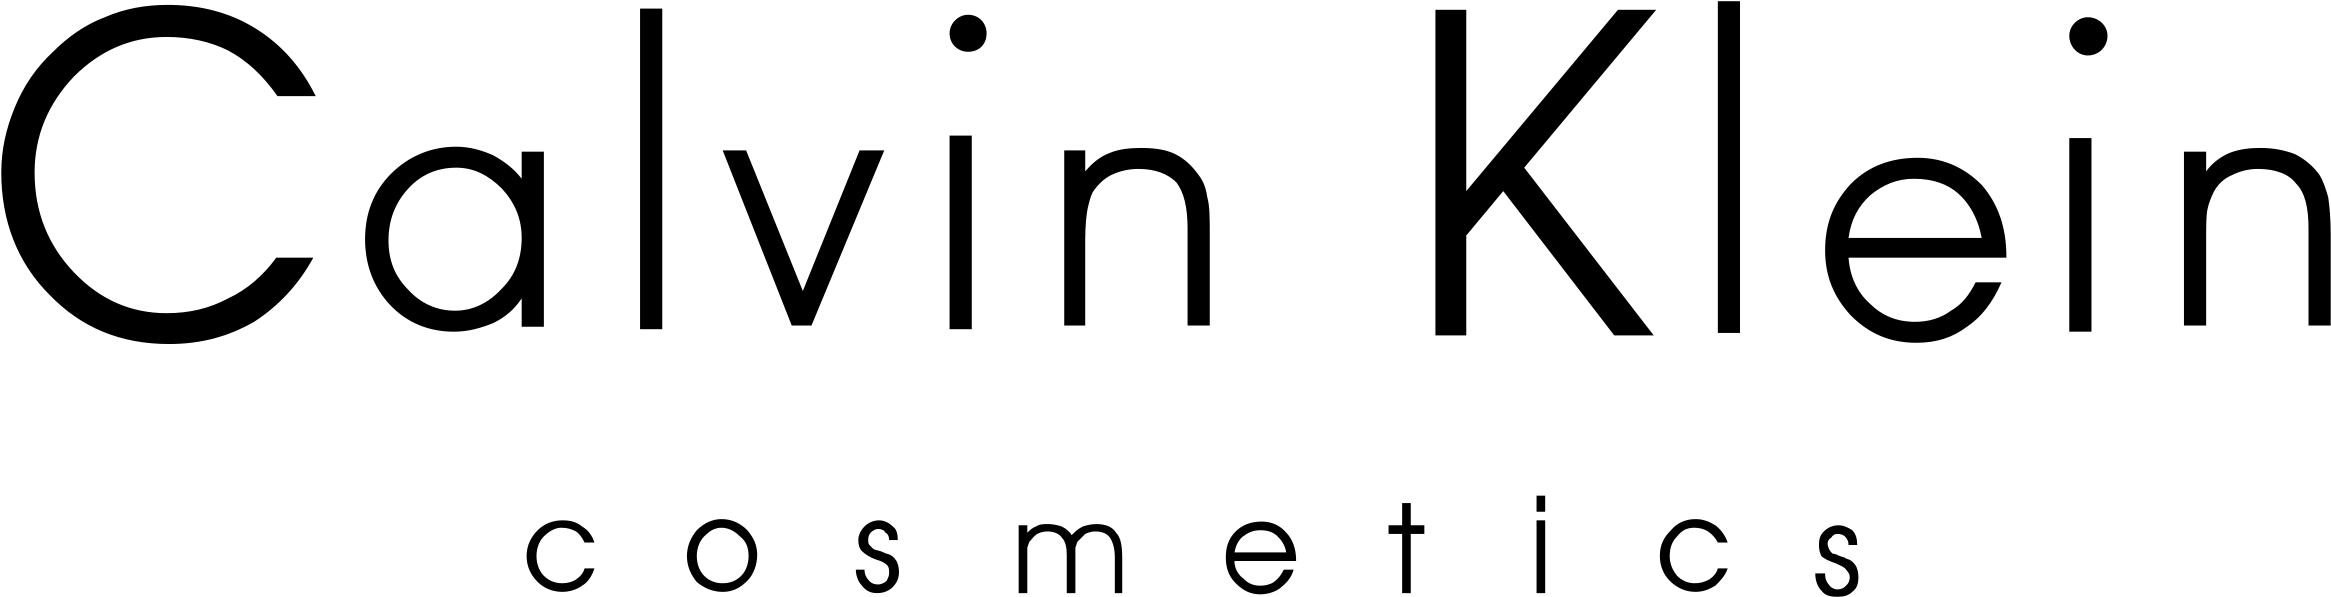 كالفين كلاين شعار صورة شفافة